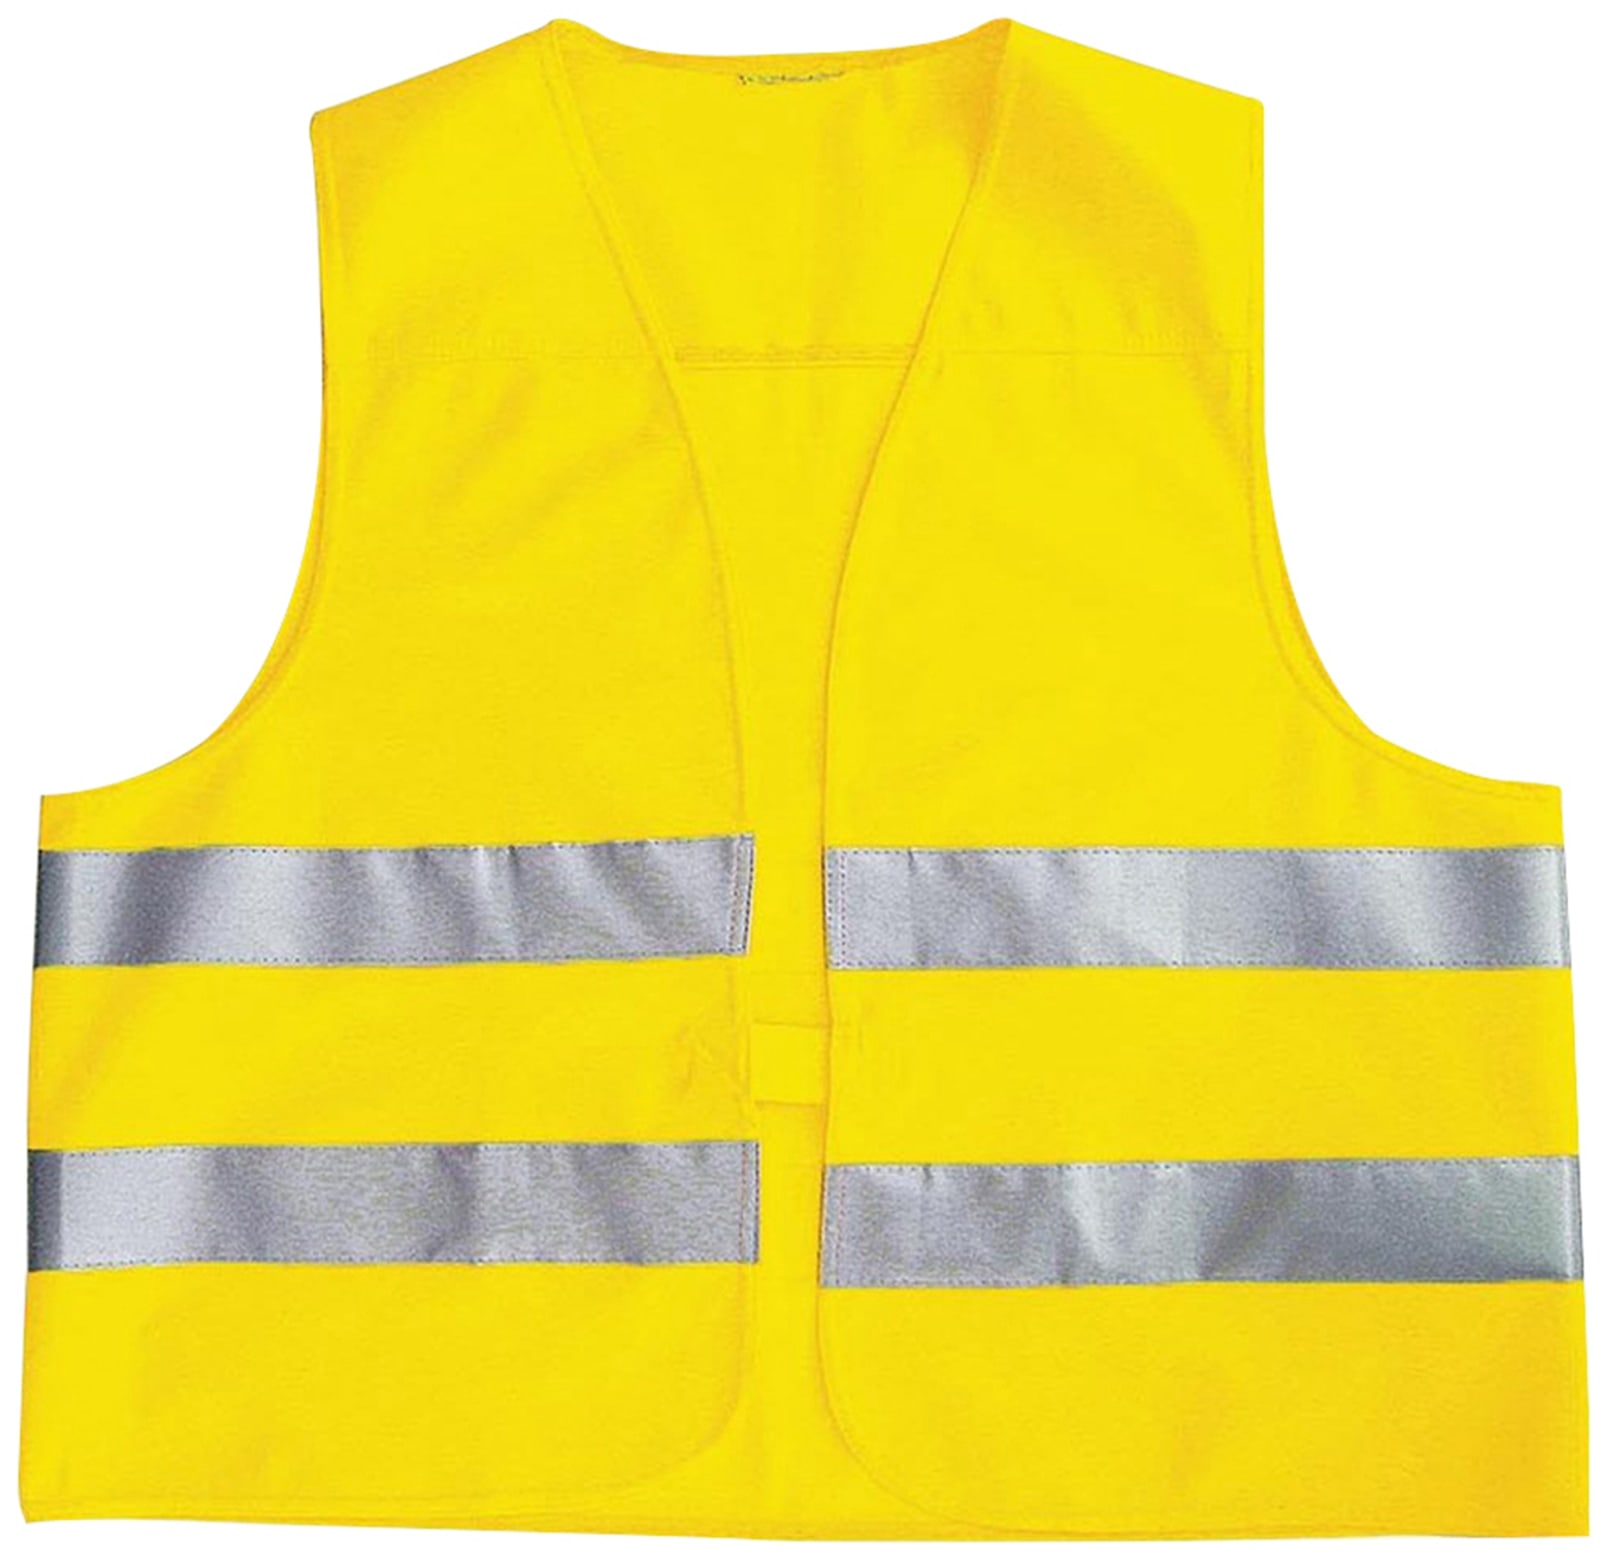 Sicherheitsweste für Kinder, gelb, DIN EN1150-1999